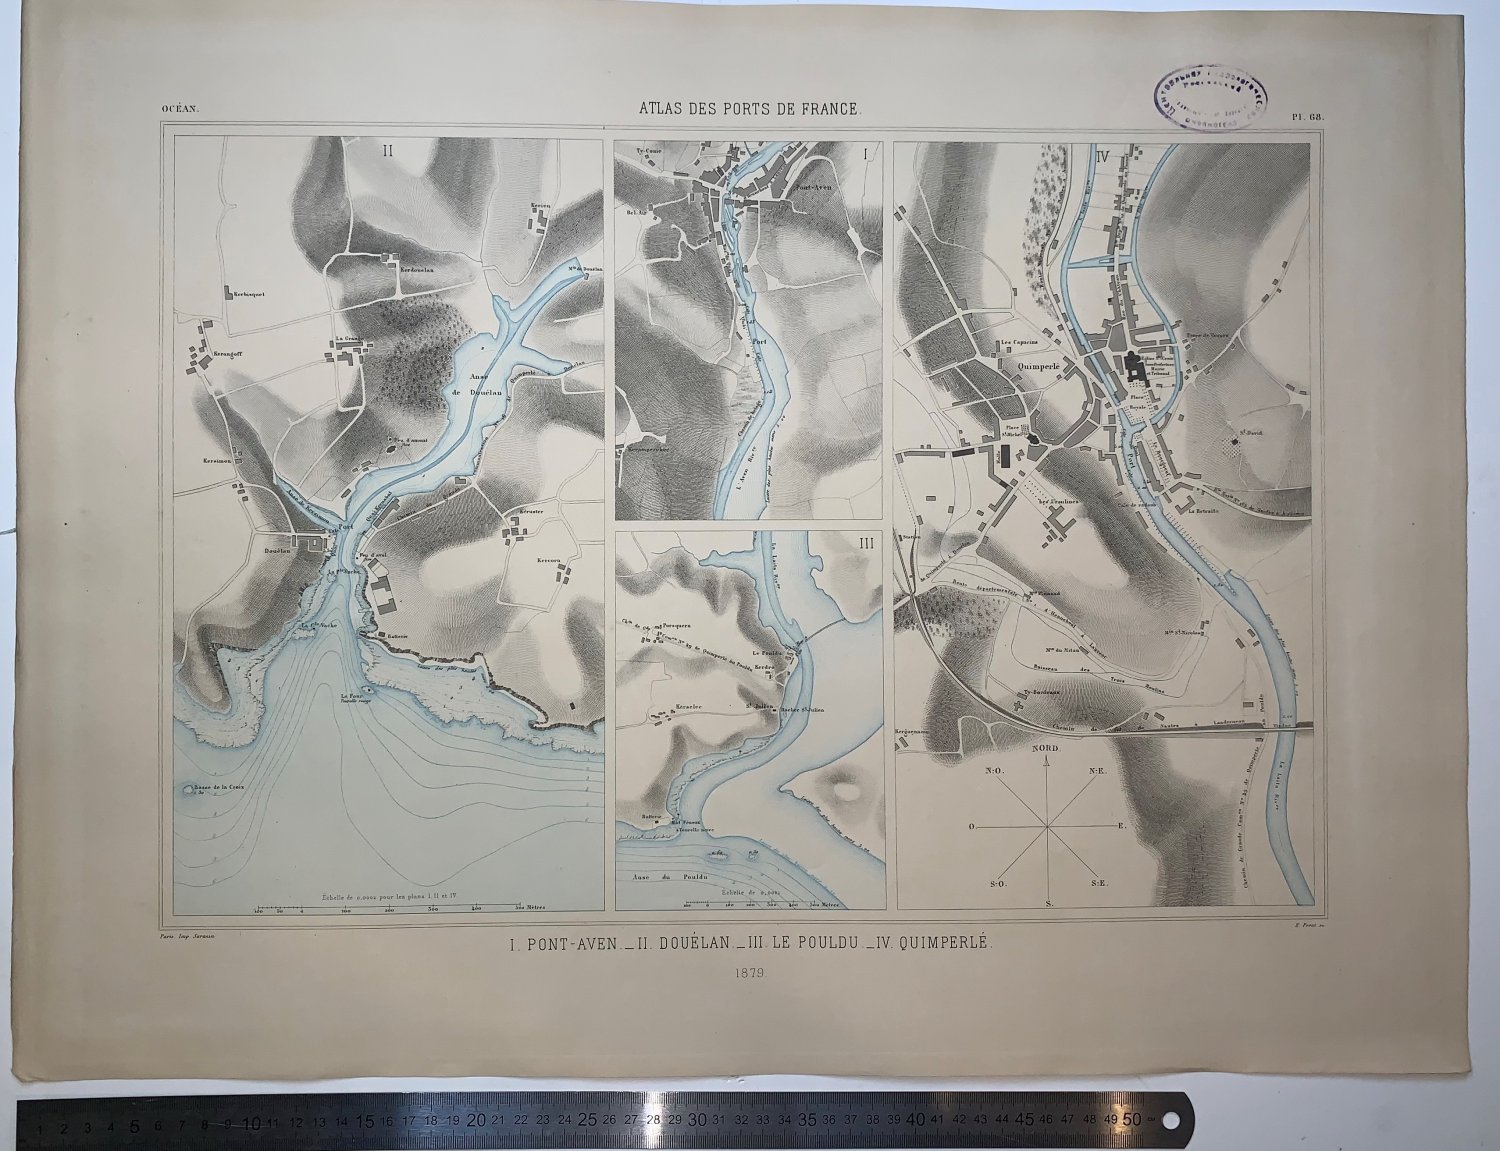 Atlas des ports de France. I. Pont-Aven II. Douelan. III. Le Pouldu. IV. Quimperle